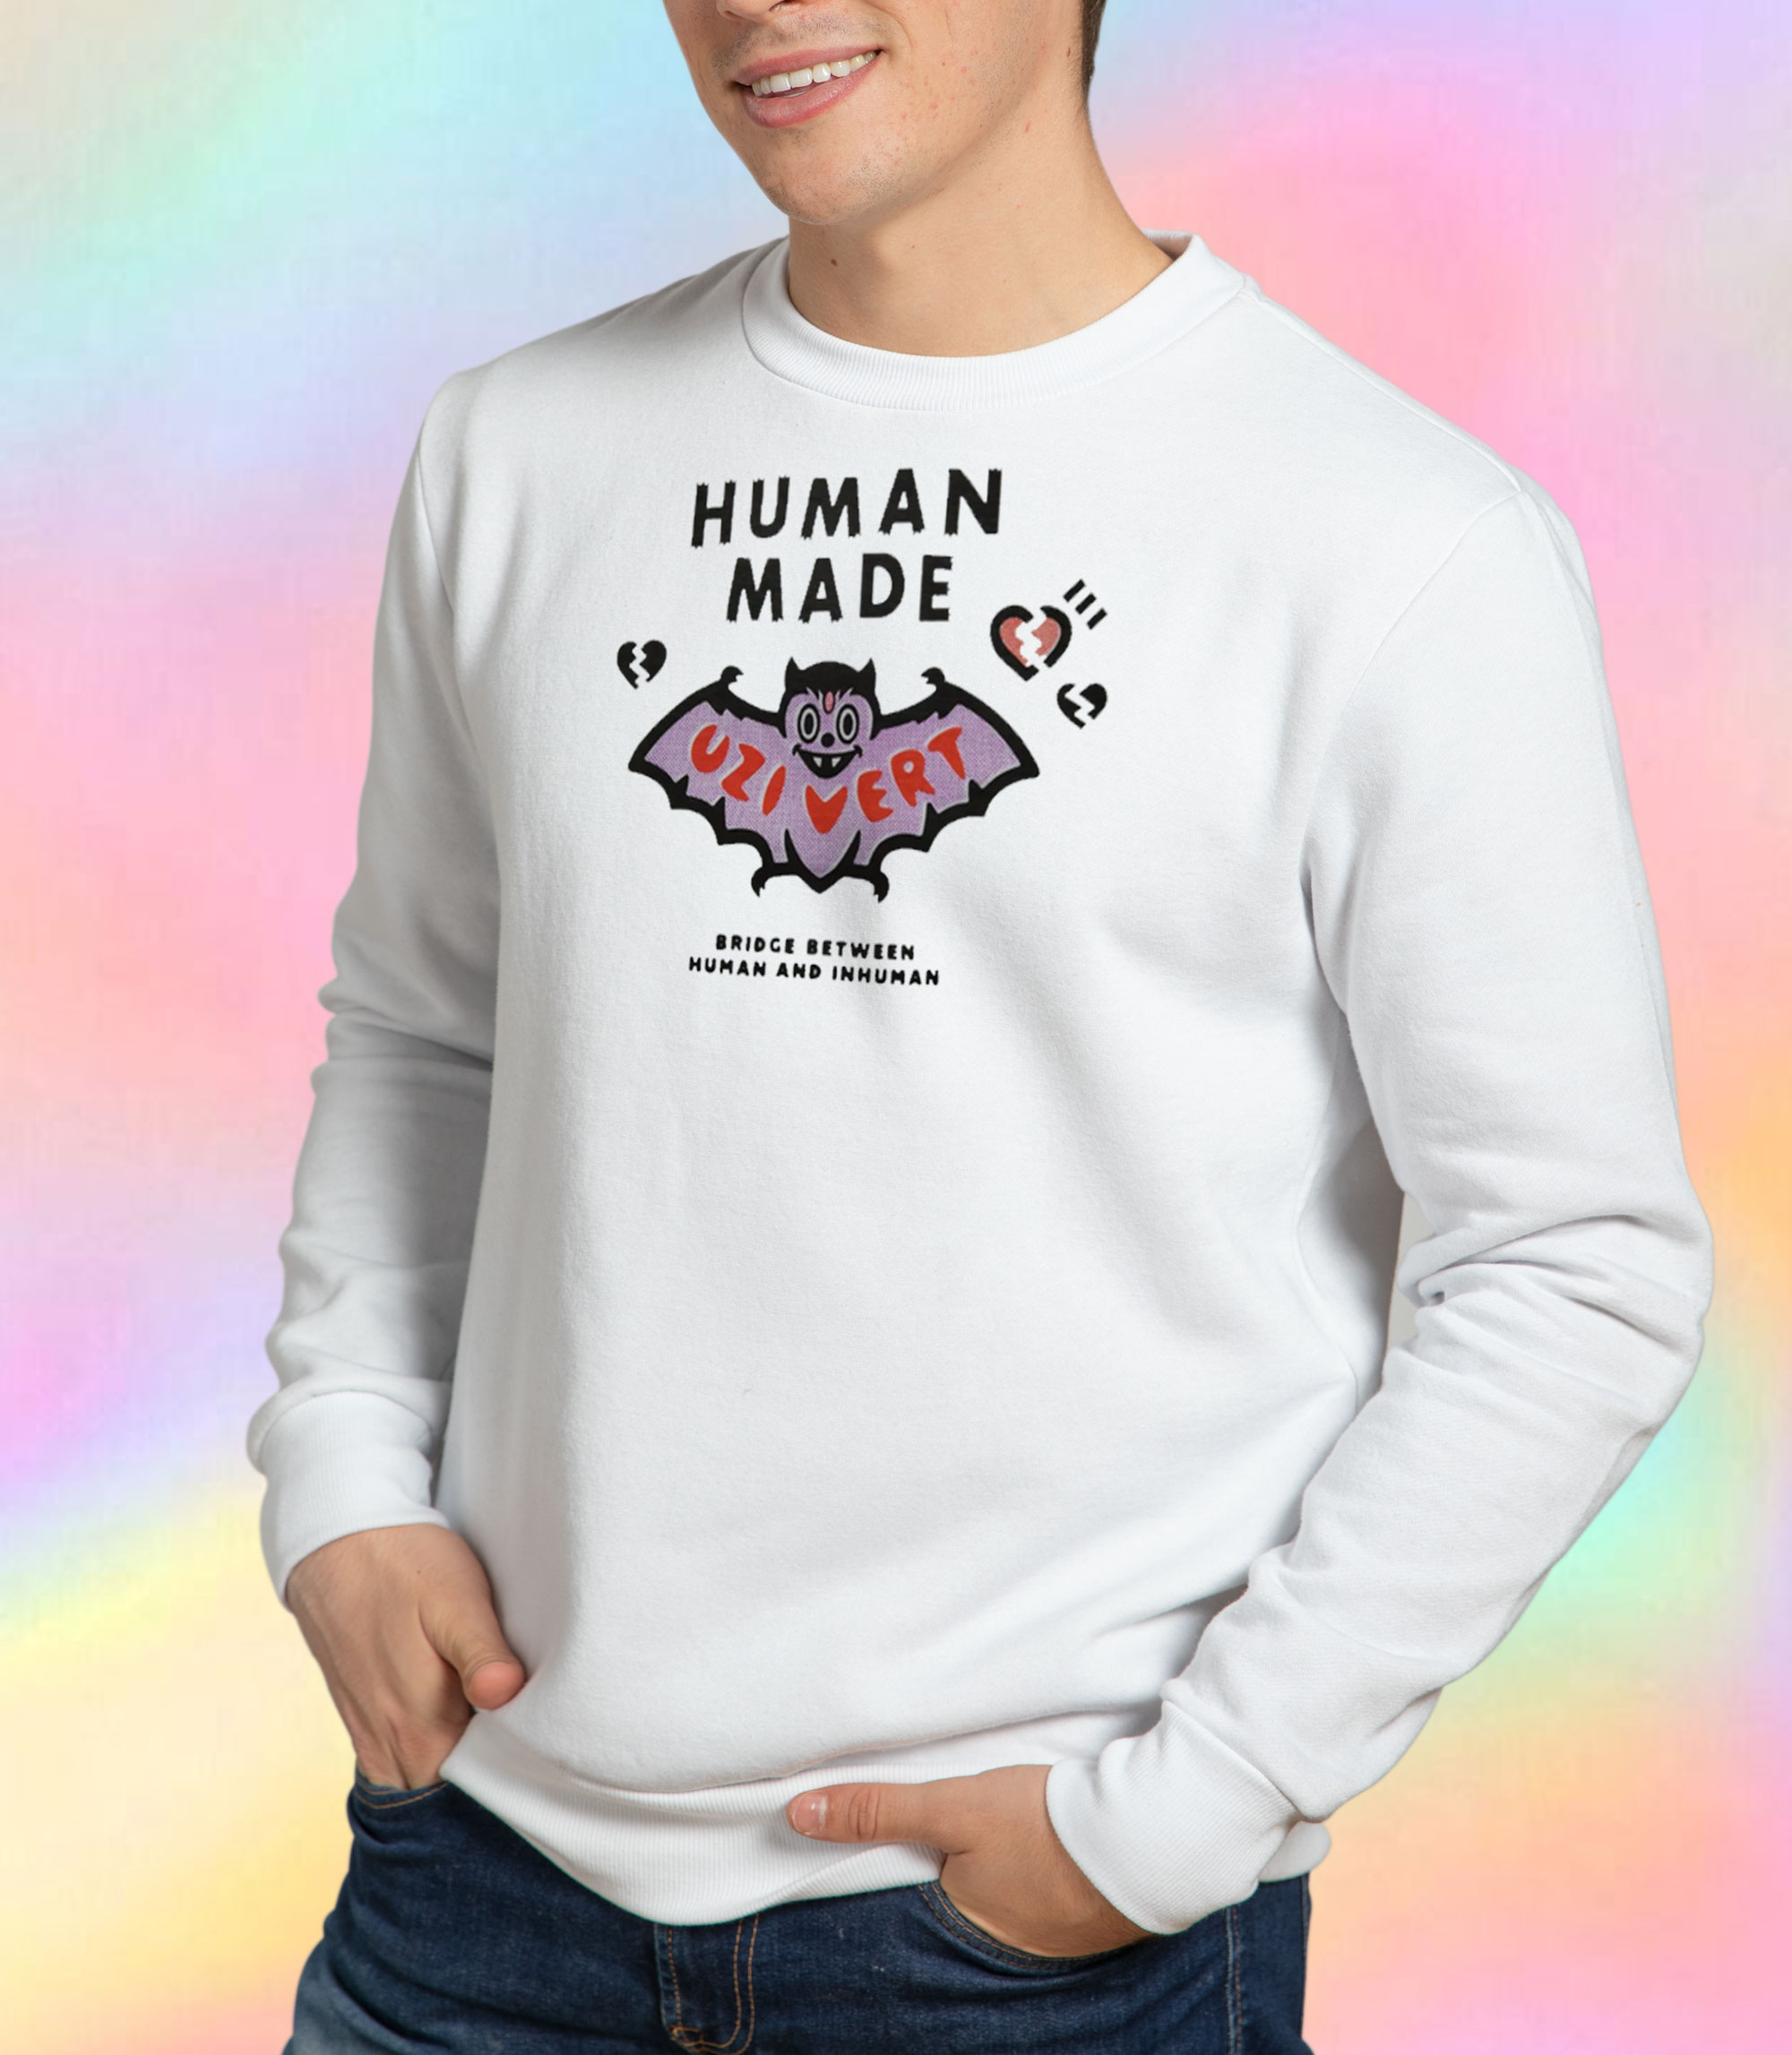 Human Made x Lil Uzi Vert L/S T-Shirt Pink